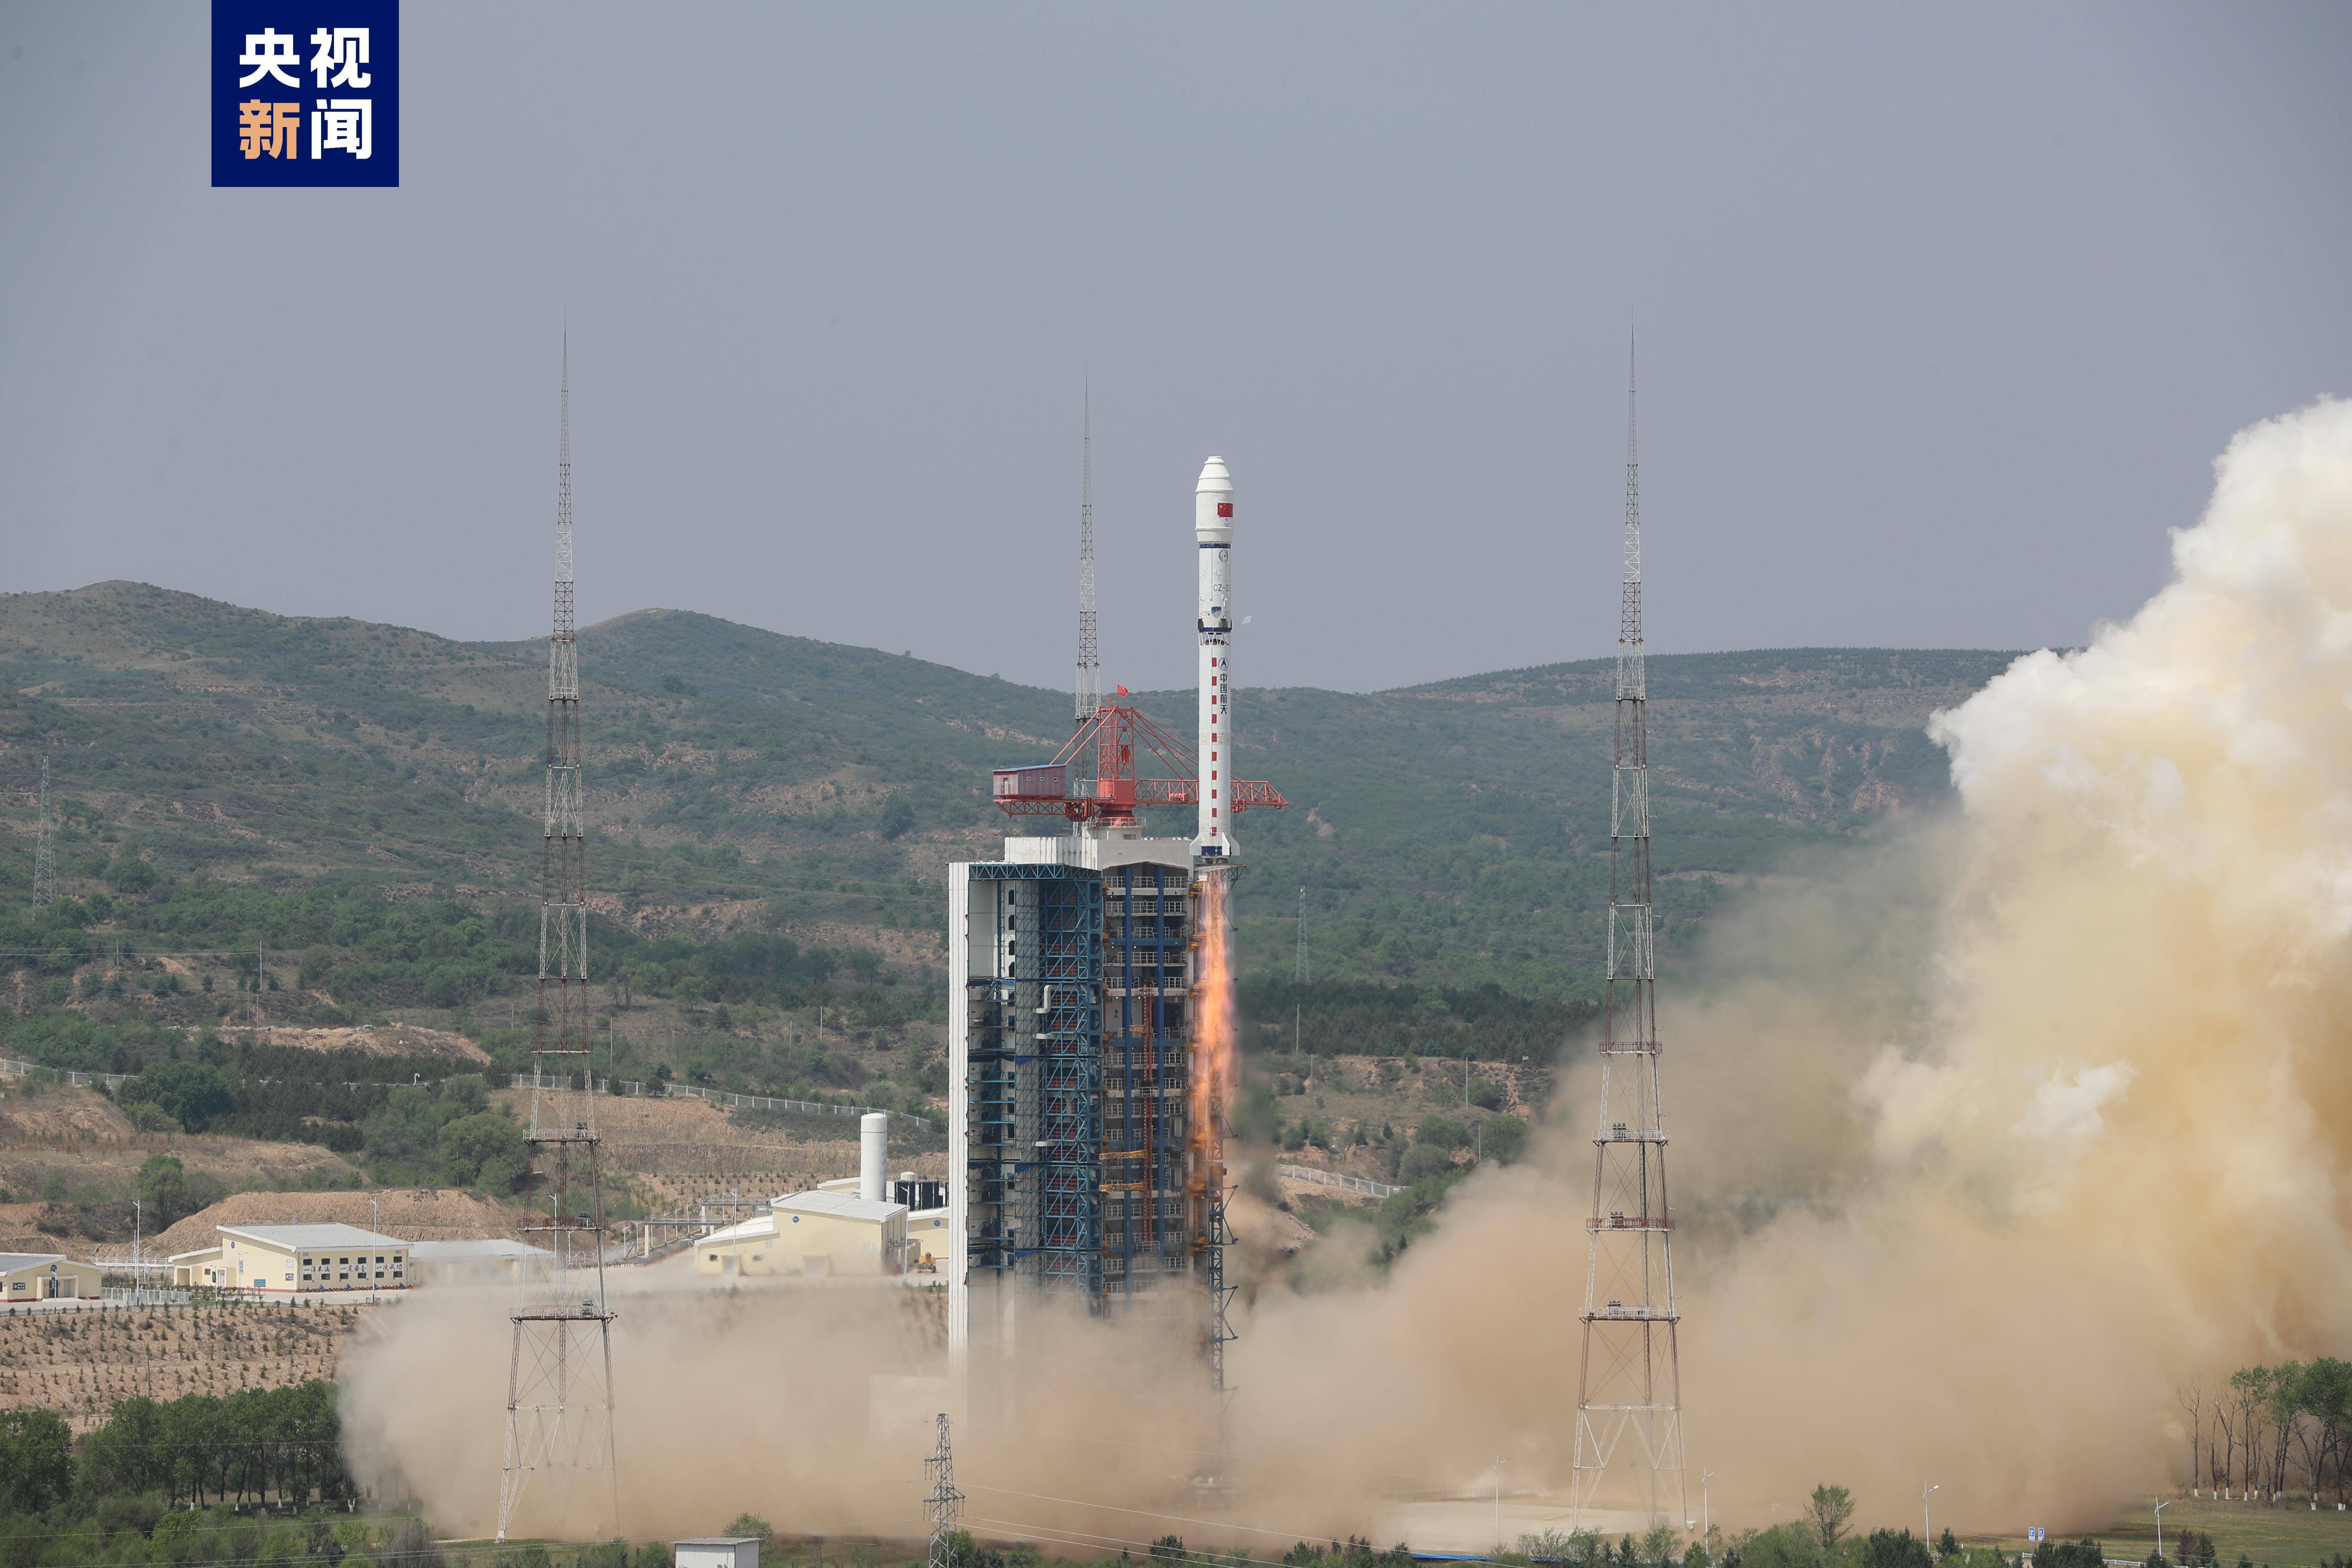 成功将北京三号c星星座发射升空,4颗卫星顺利进入预定轨道,发射任务